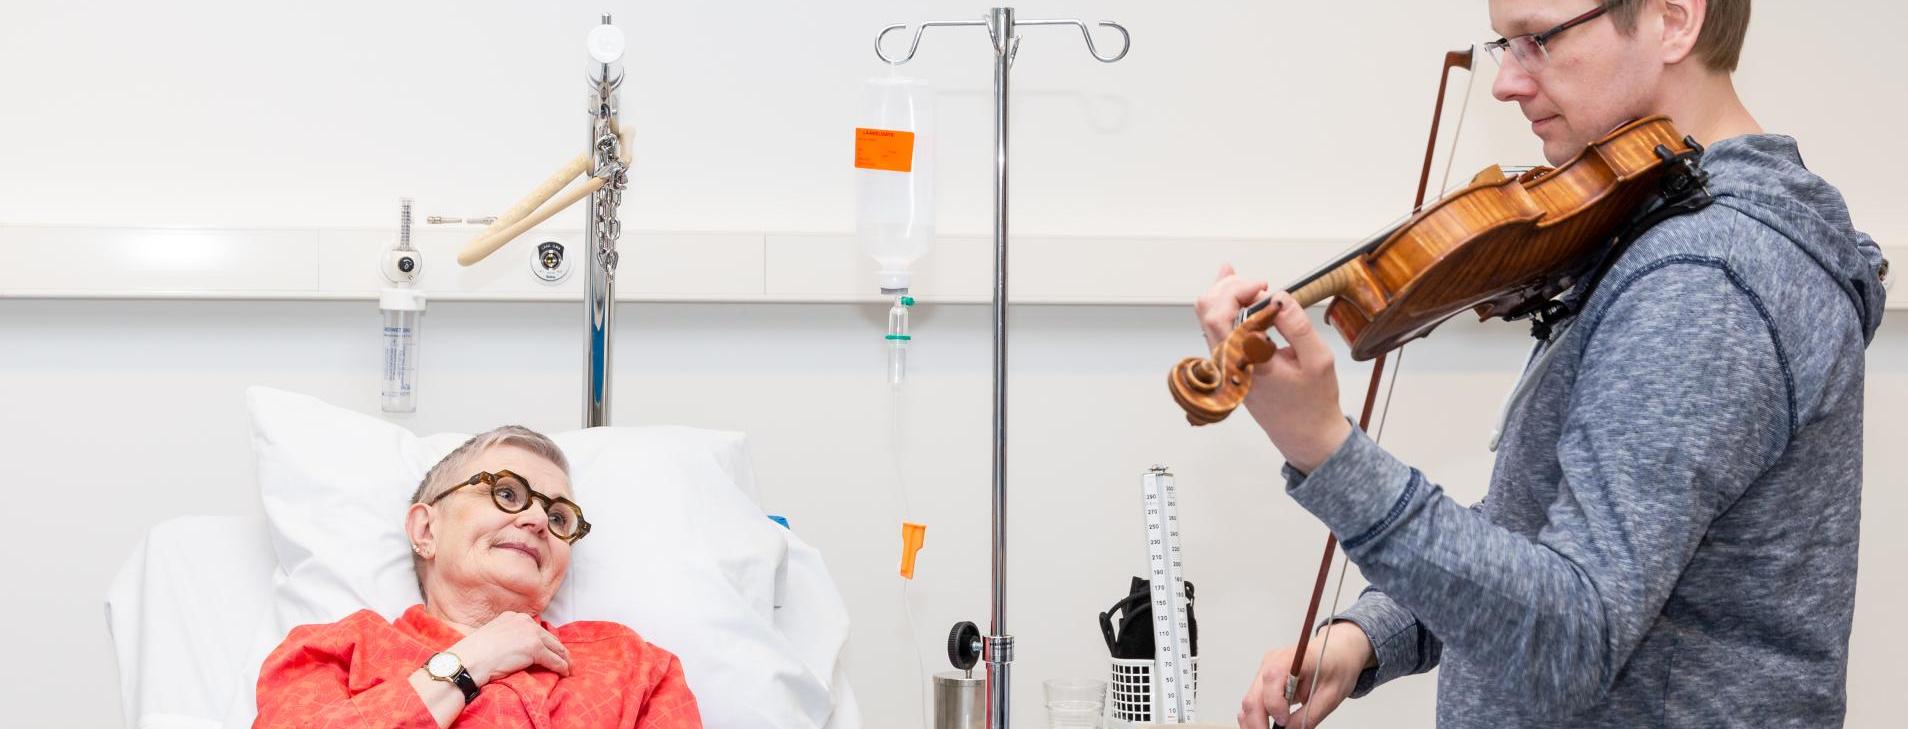 mies soittaa viulua sairaalasängyssä  makaavalle naiselle